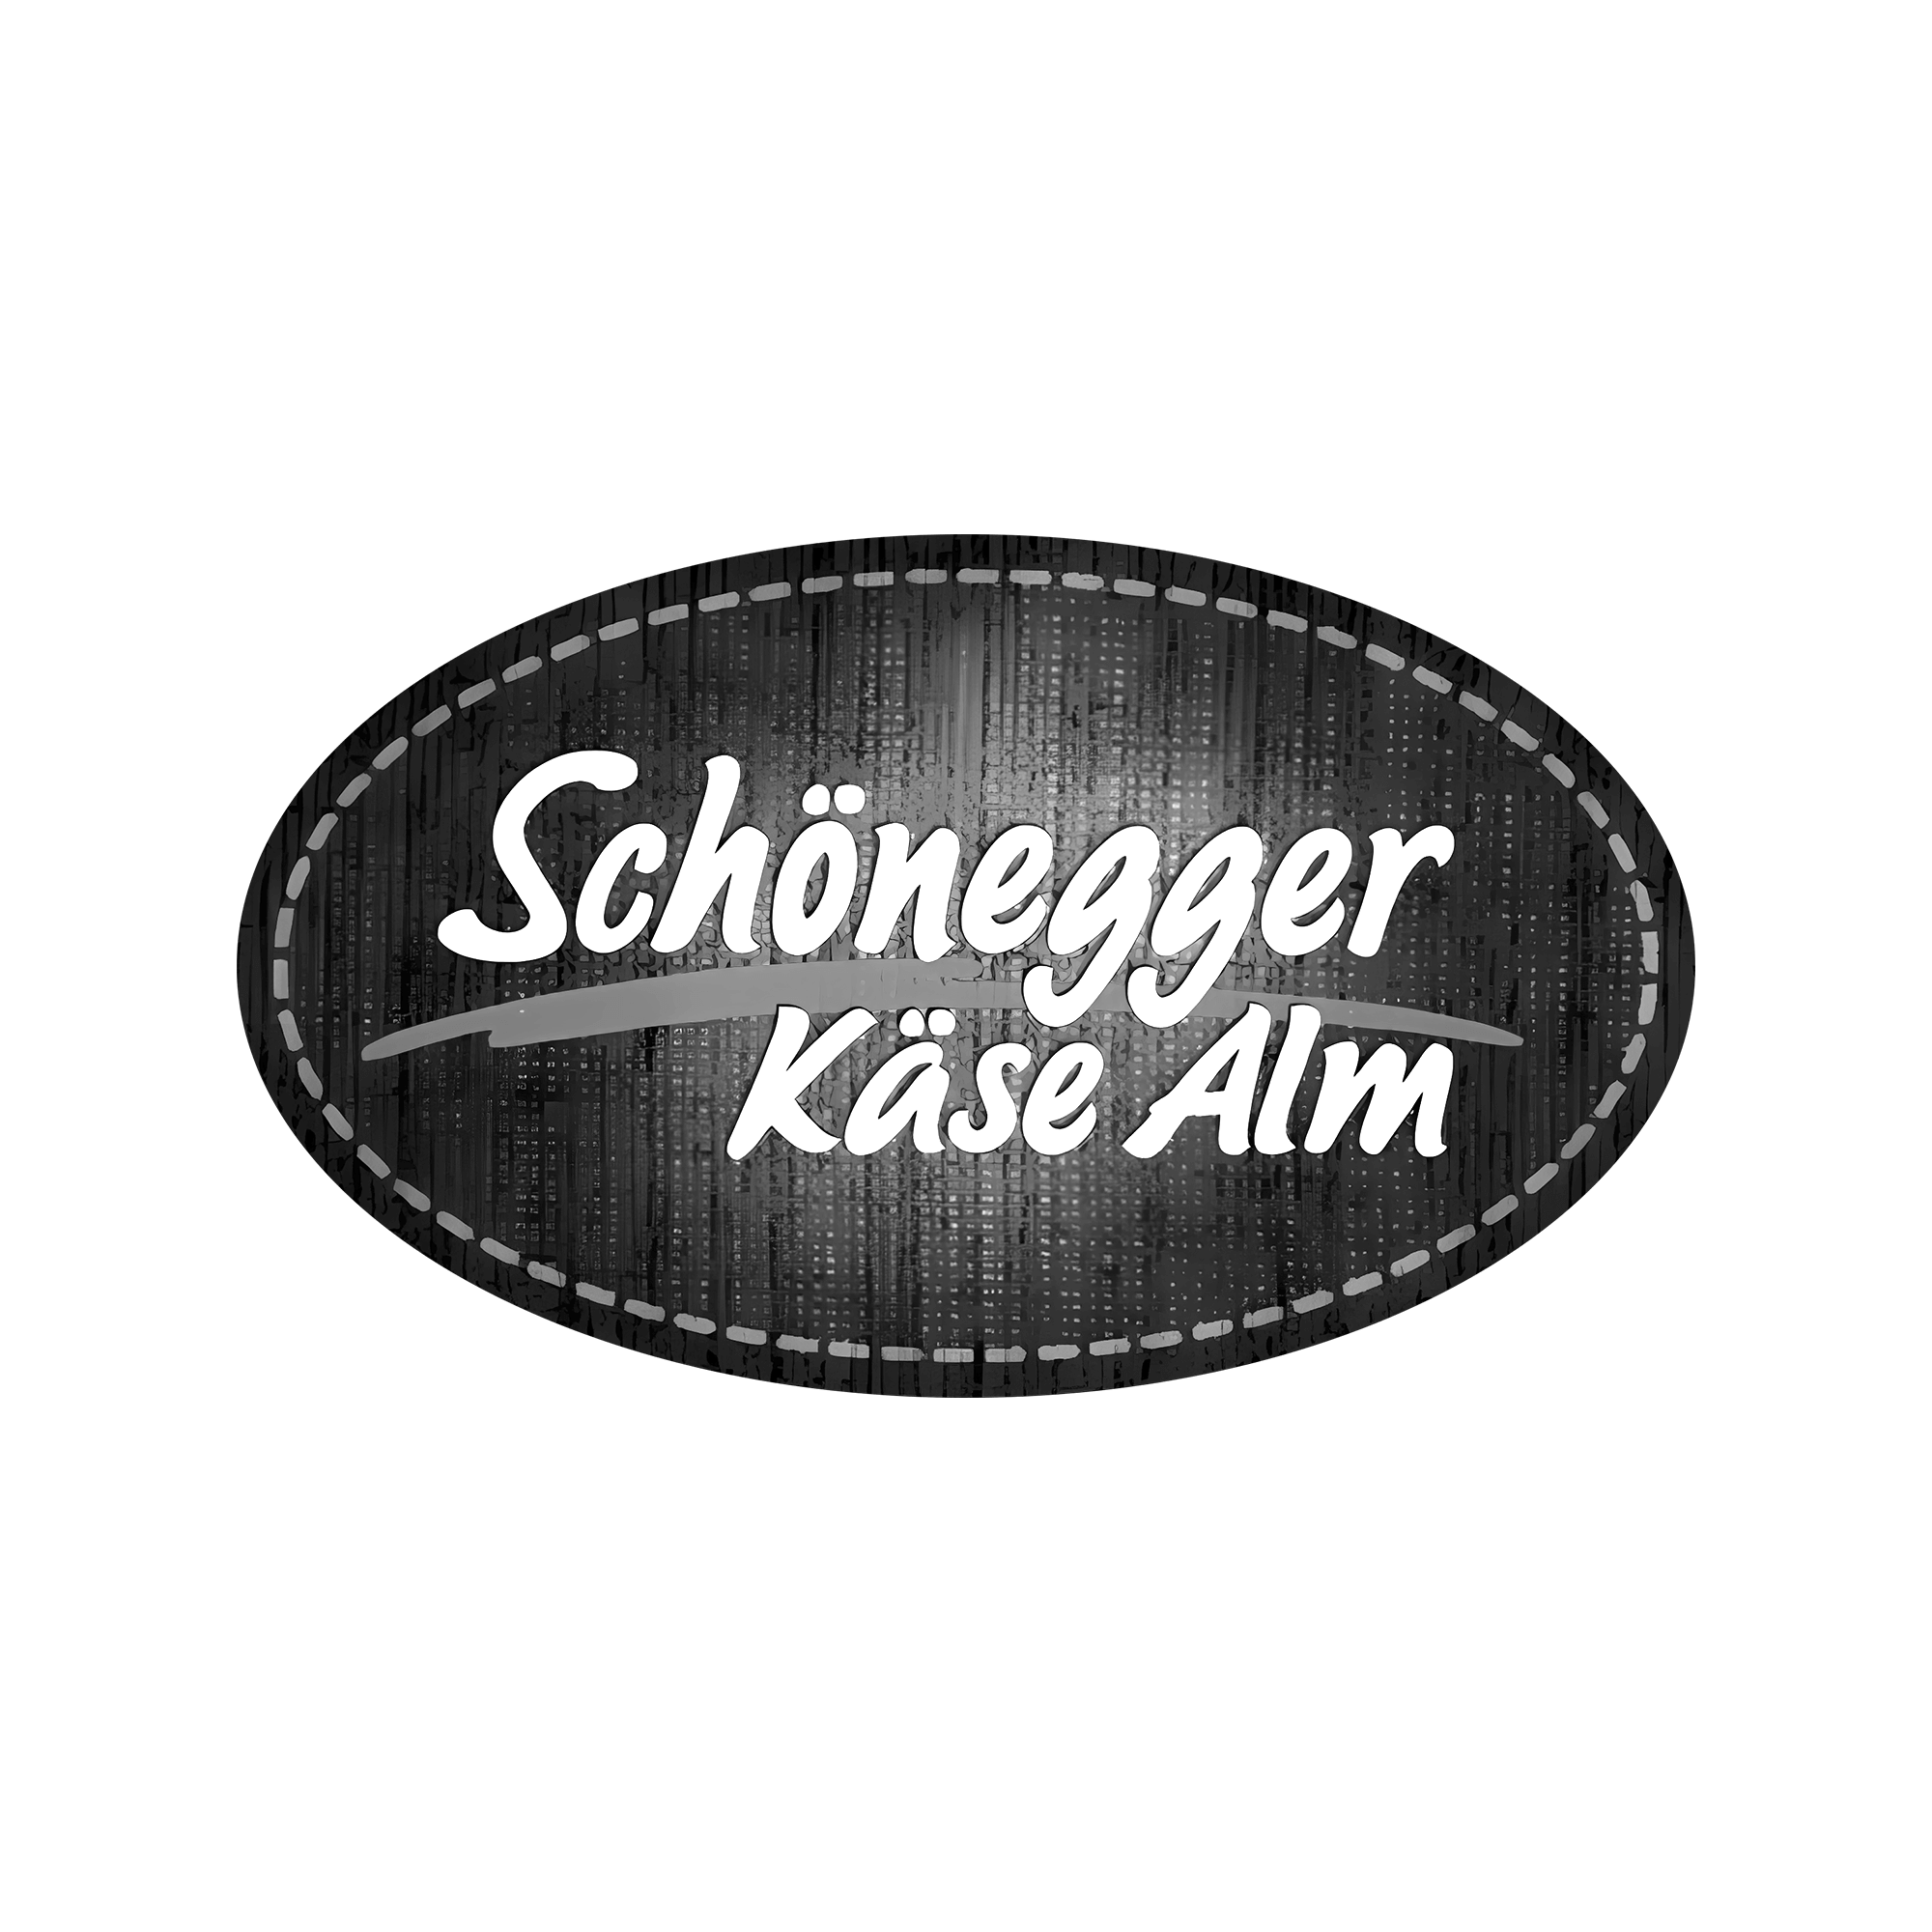 Logo von Schönegger Käse Alm in Graustufen auf transparentem Hintergrund.